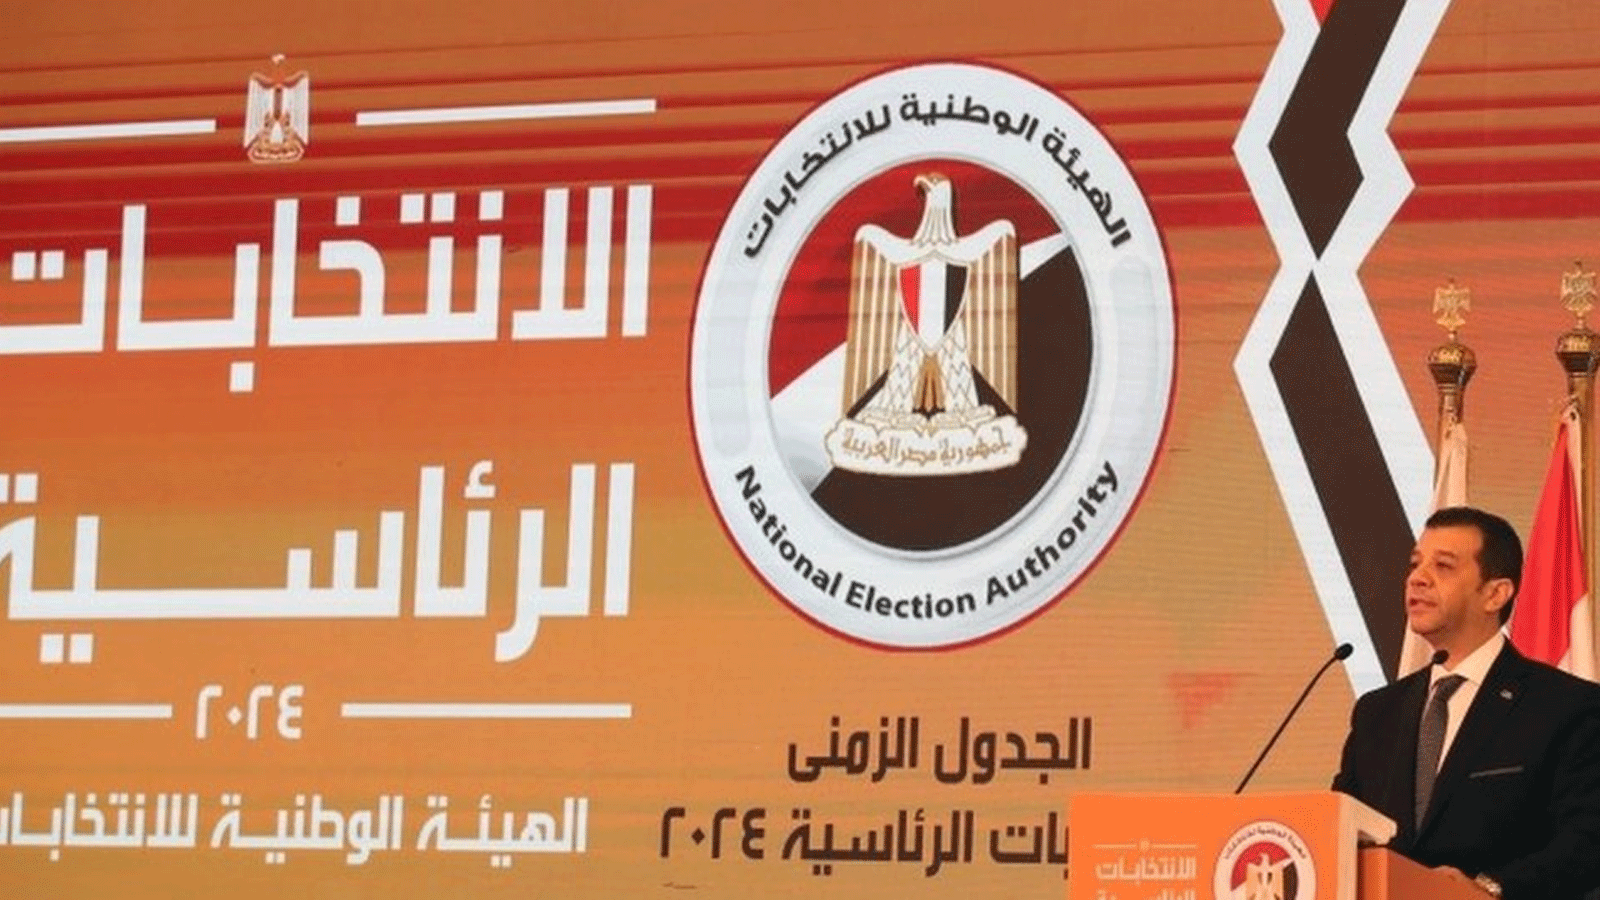 الهيئة الوطنية للانتخابات في مصر تُعلِن موعد الانتخابات الرئاسية